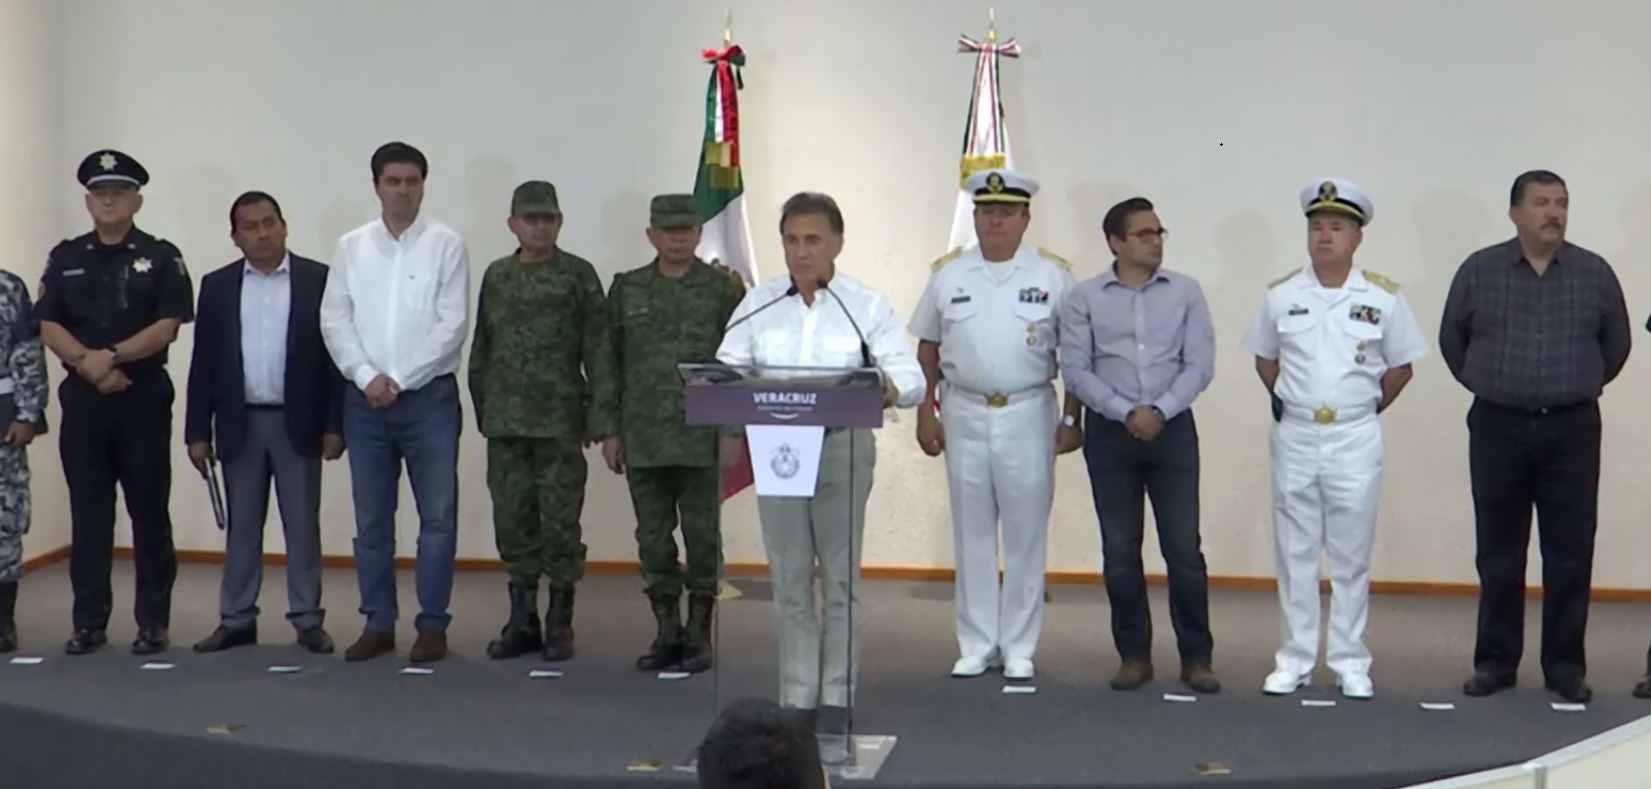 Confirman 8 muertos tras ataque armado en Coxquihui, Veracruz